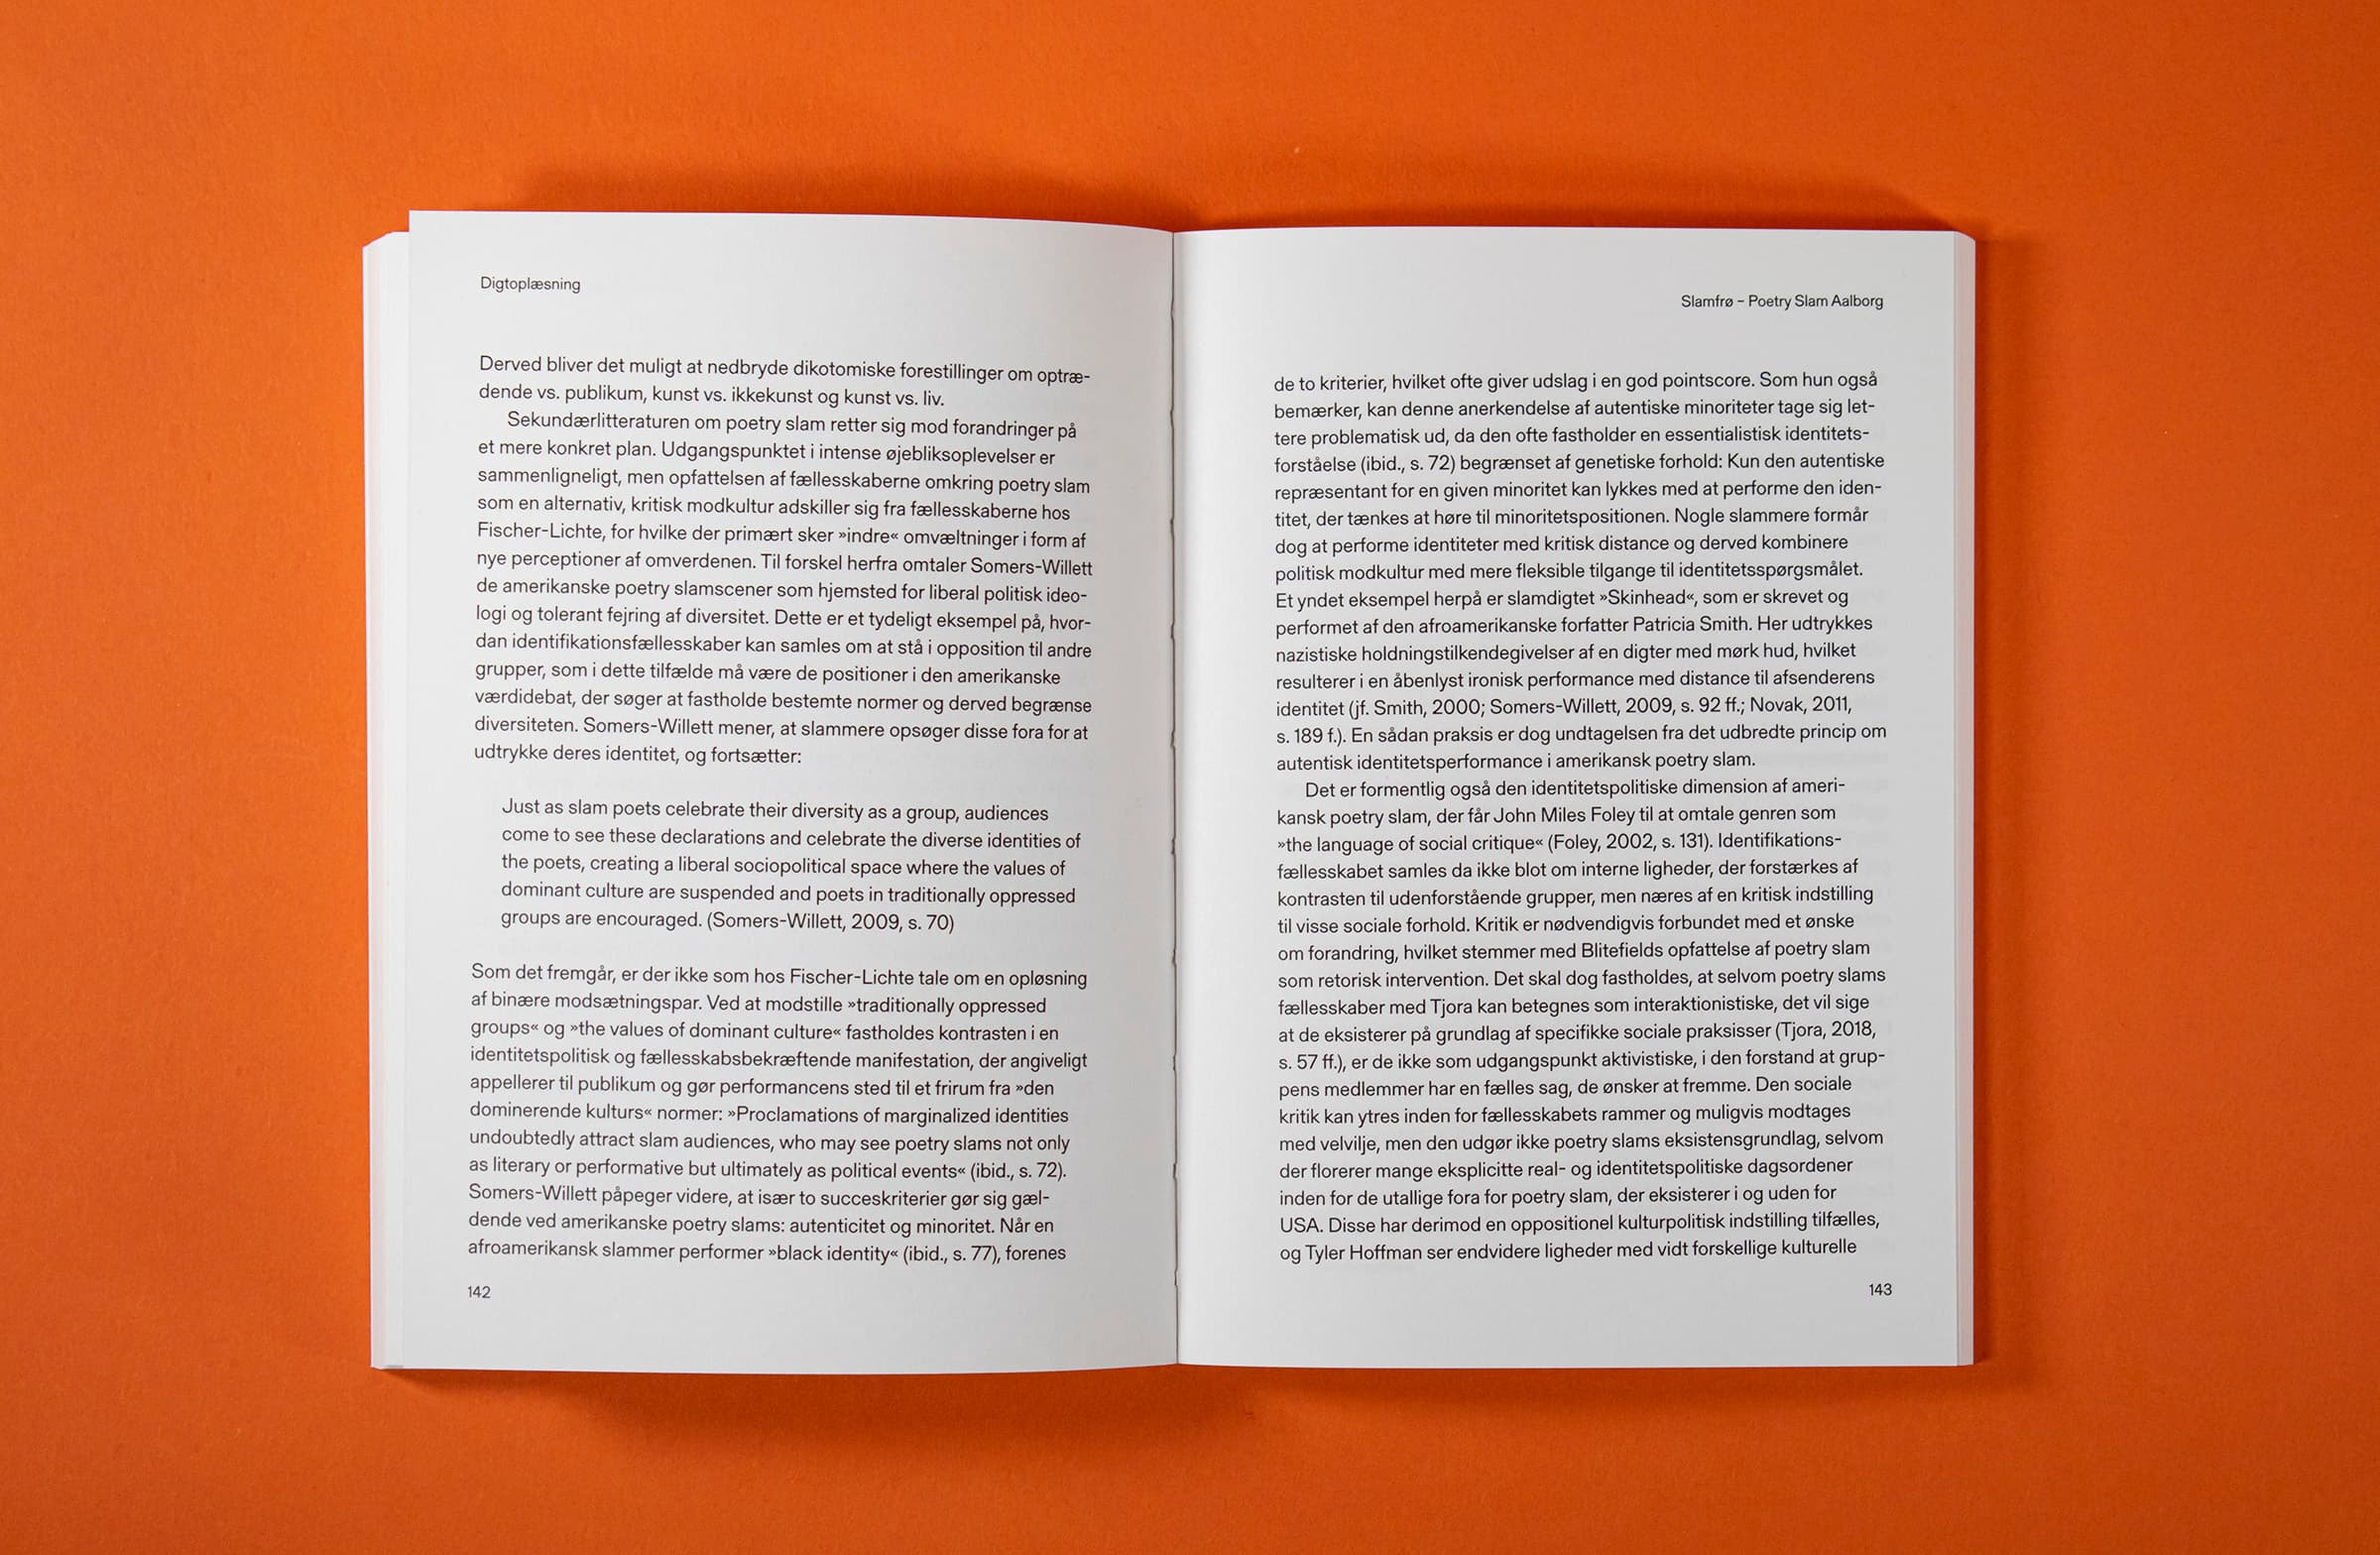 Bildet viser et teksttungt oppslag, hvor man tydelig kan se bokens satsspeil.